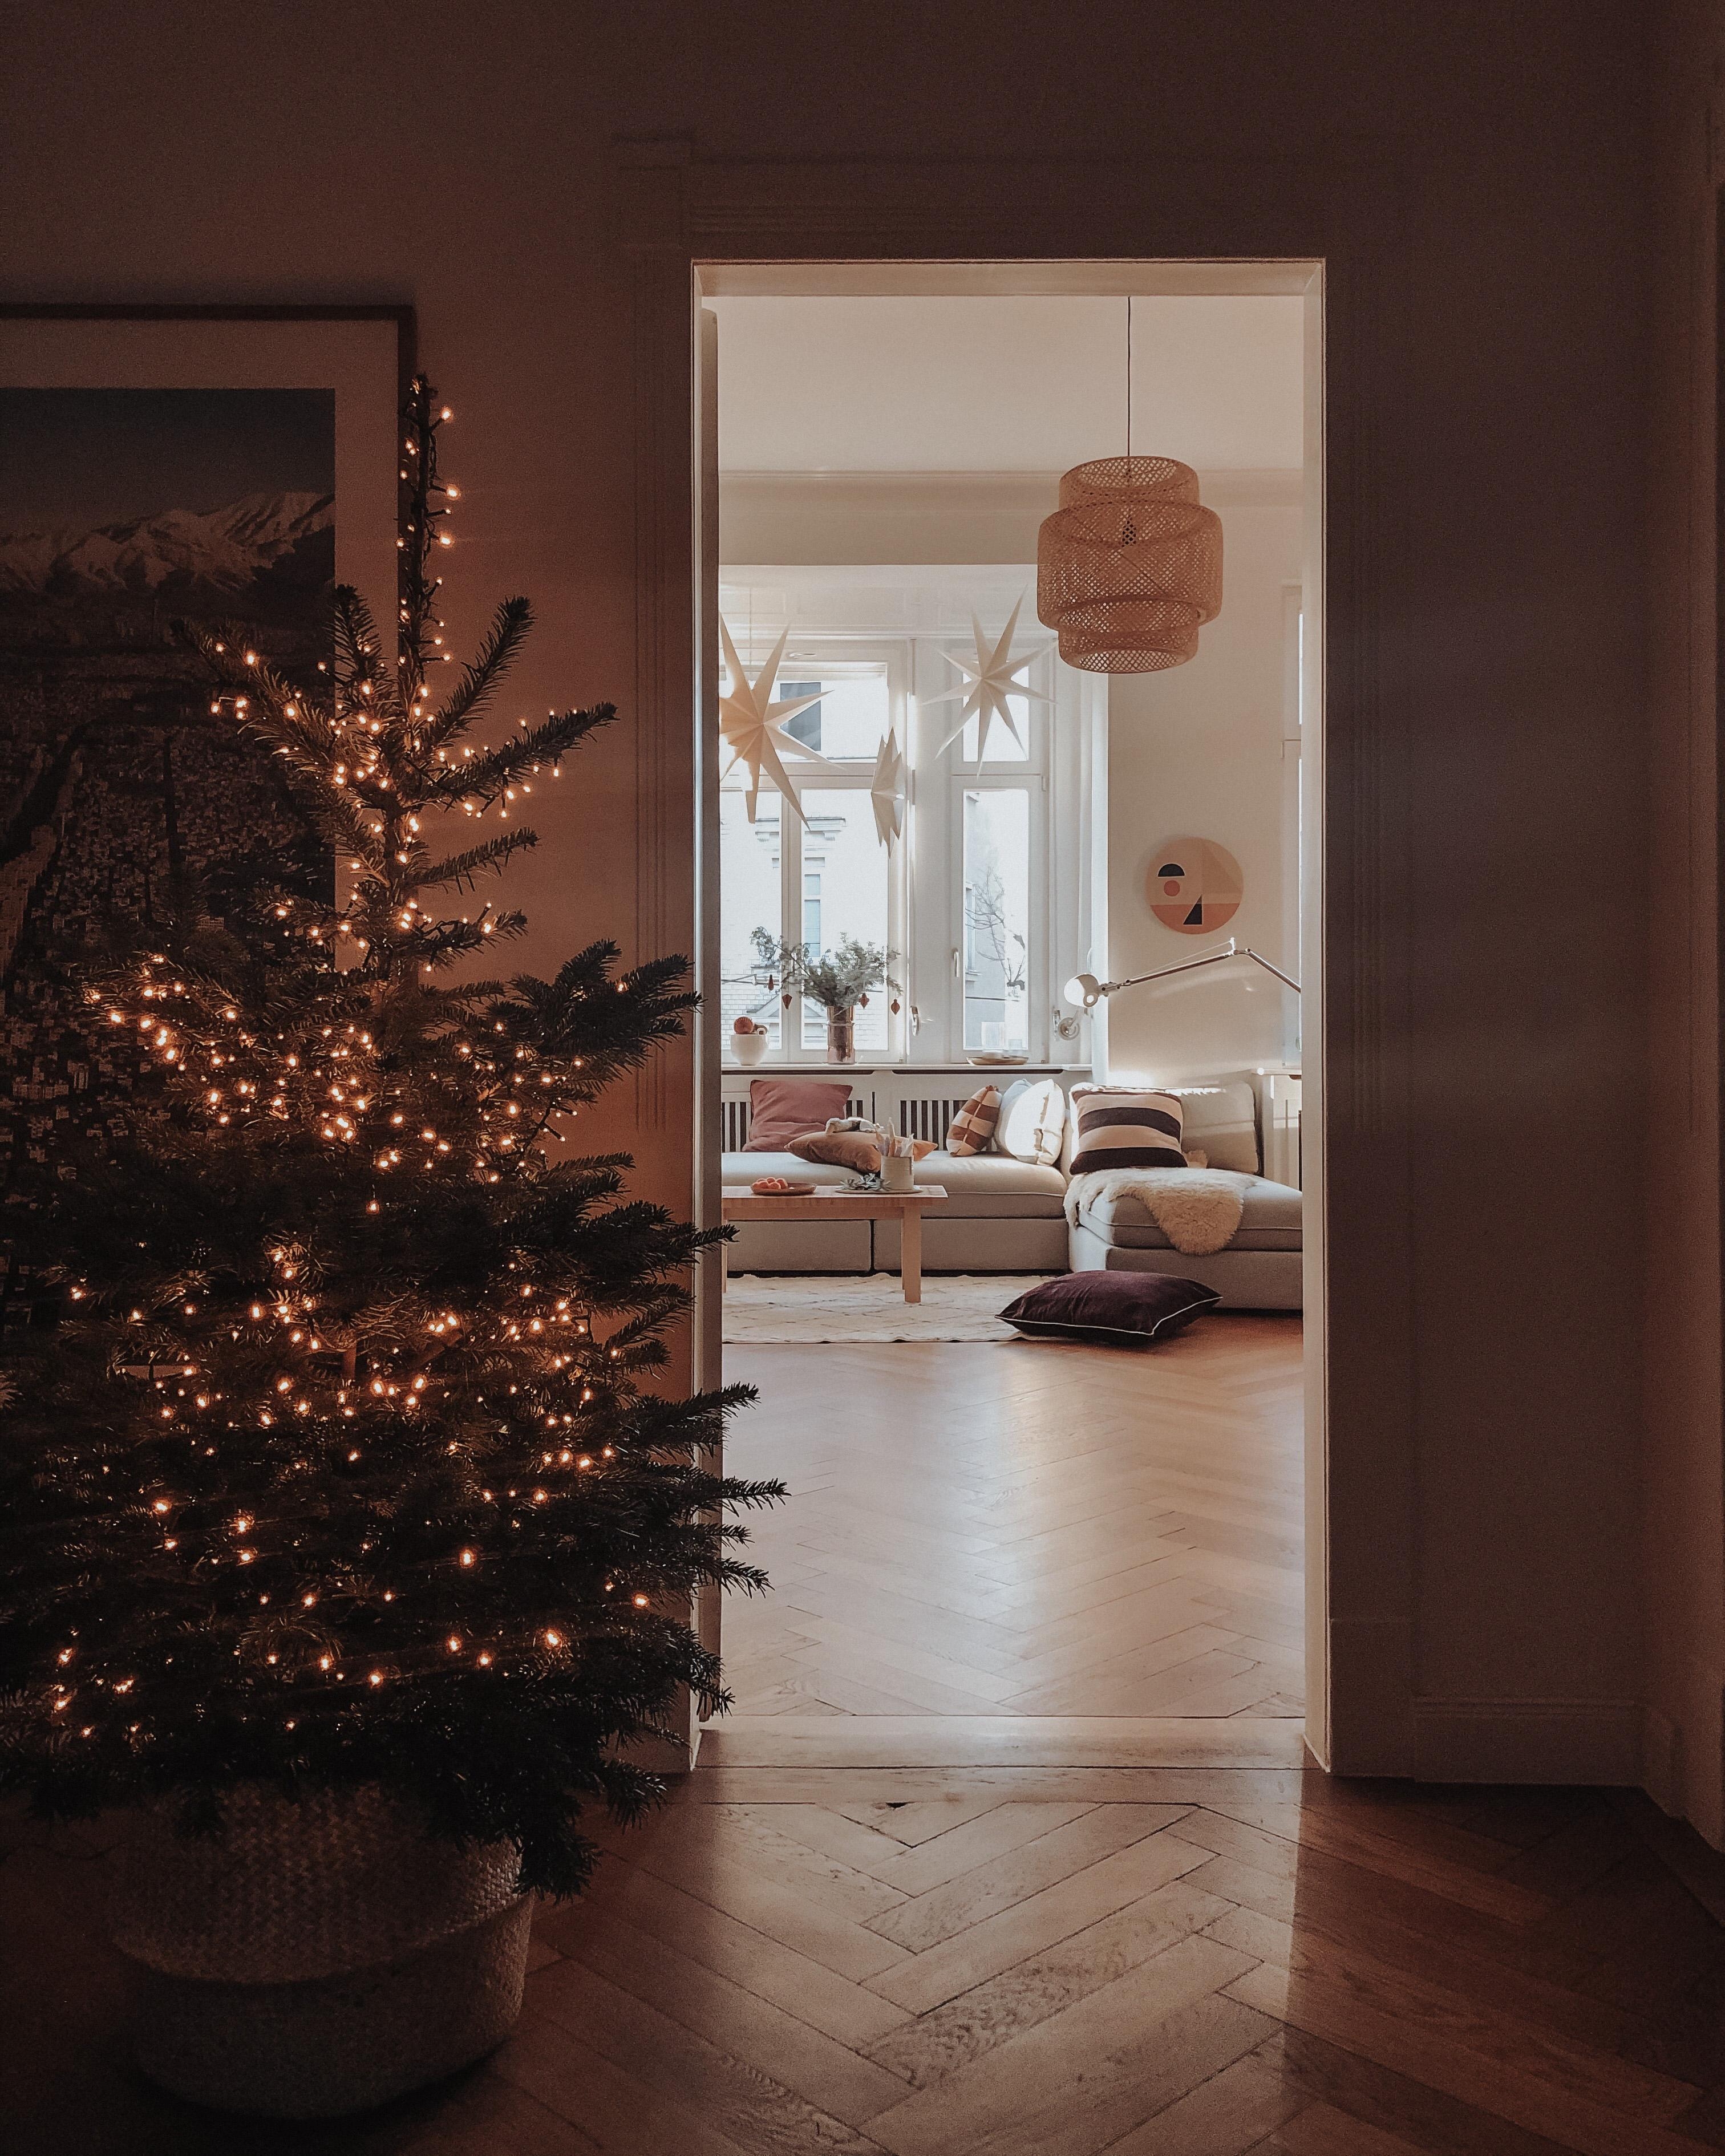 Am 4. Adventswochenende wandert der Baum ins Wohnzimmer um geschmückt zu werden 